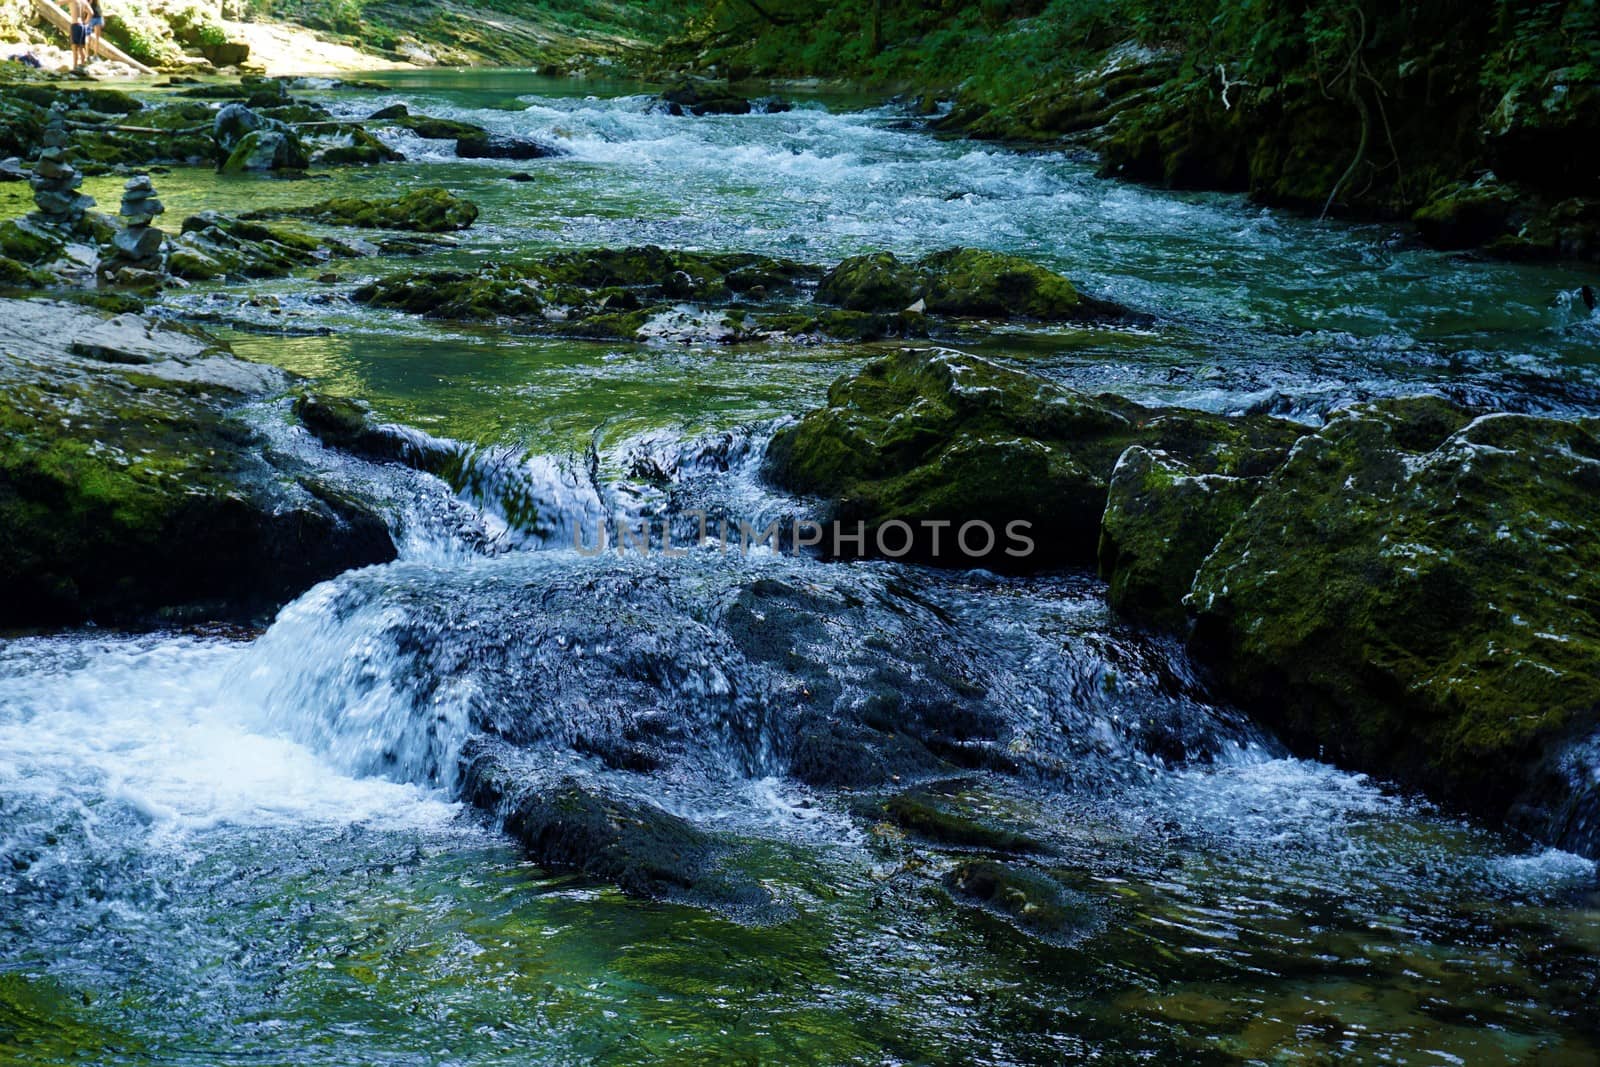 Mossy rocks in the Radovna river near Podhom, Slovenia